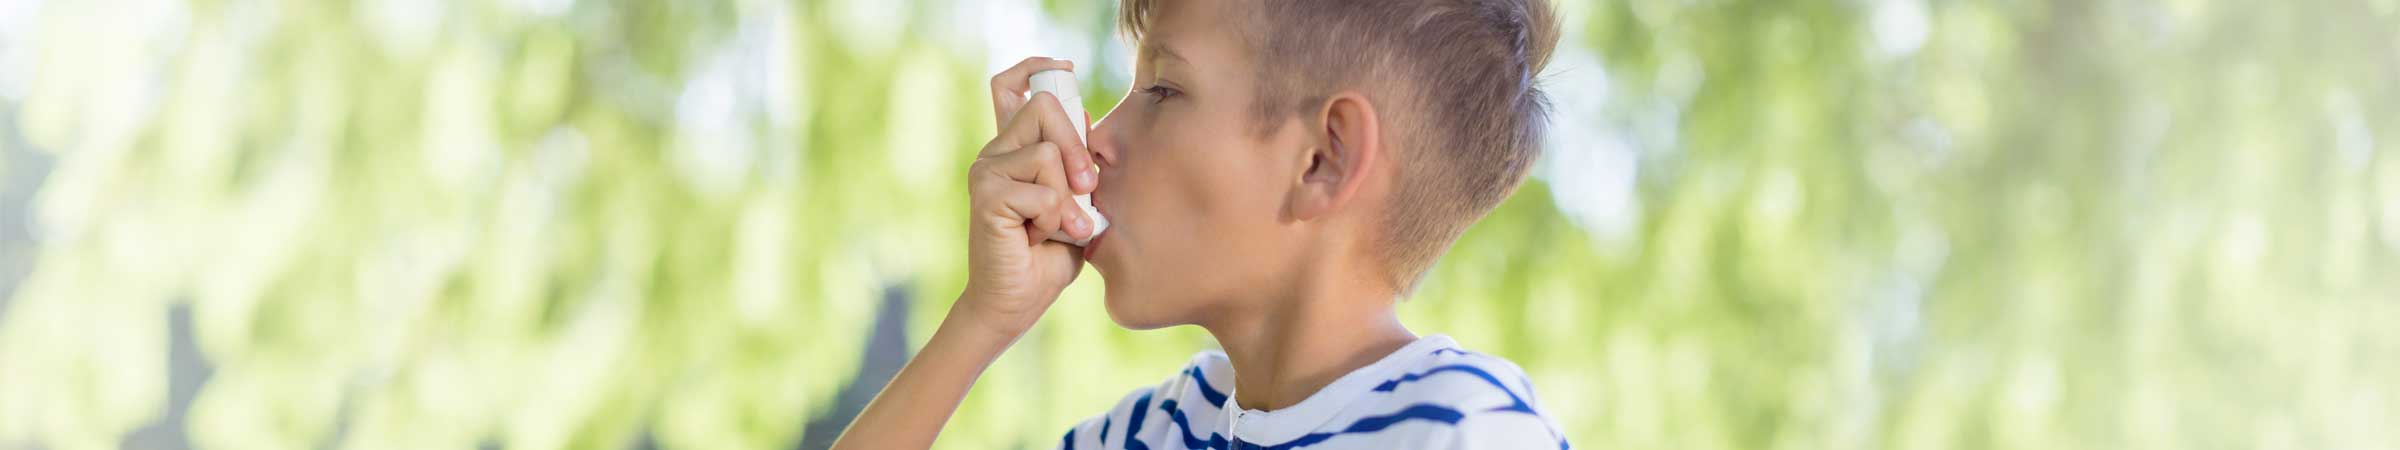 Junge mit Asthmainhalator